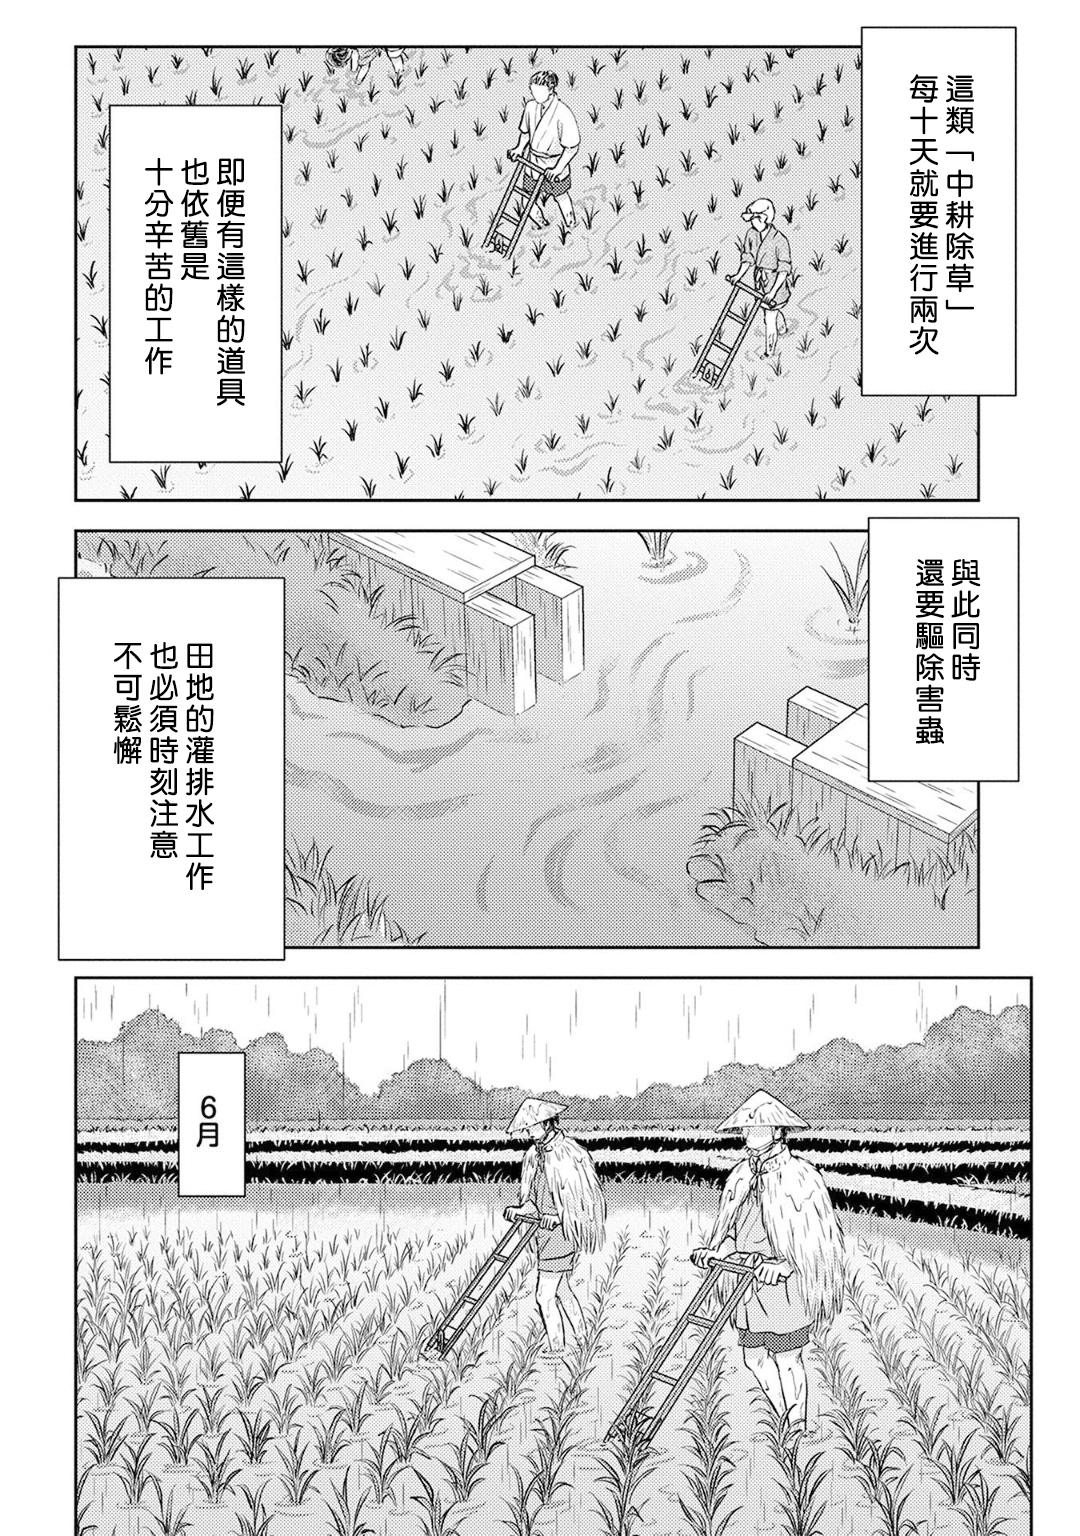 論現代農業技術在古代戰國的可實施性 - 第06幕 種稻 - 6